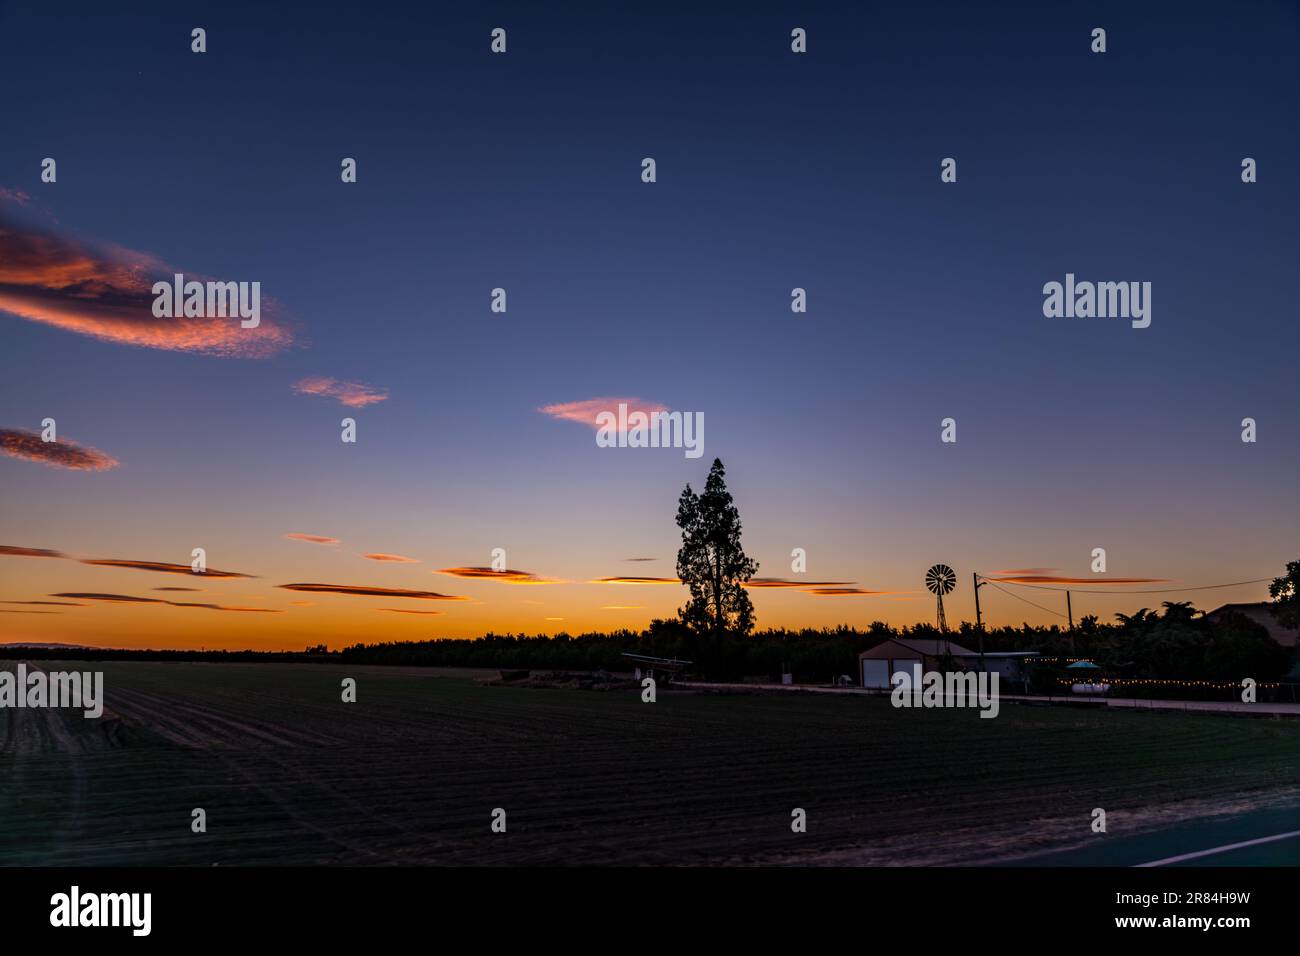 Linsenwolken sorgen für einen traumhaft aussehenden Sonnenuntergang im Westen von Stanislaus County Kalifornien, als hohe Winde diesen wunderschönen Effekt auslösten Stockfoto